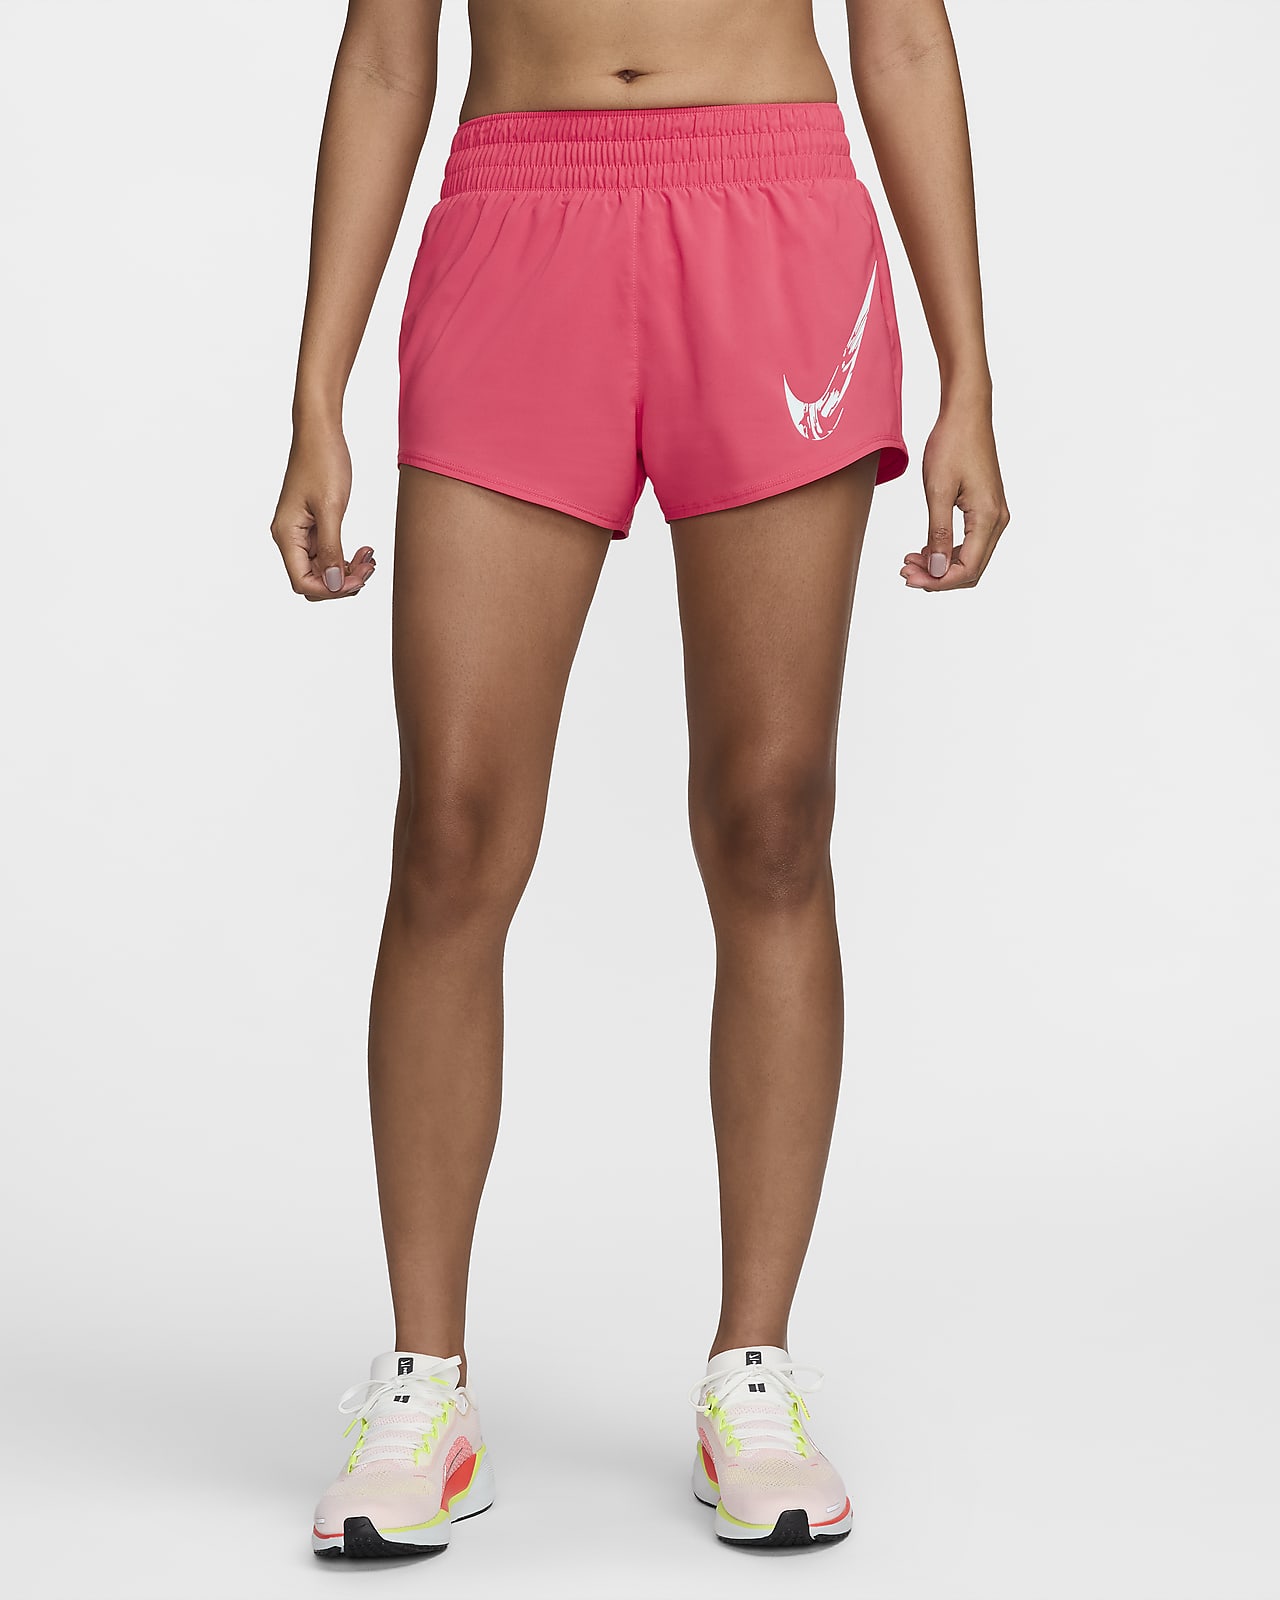 Nike One 女款 Dri-FIT 中腰附內裡褲圖樣短褲